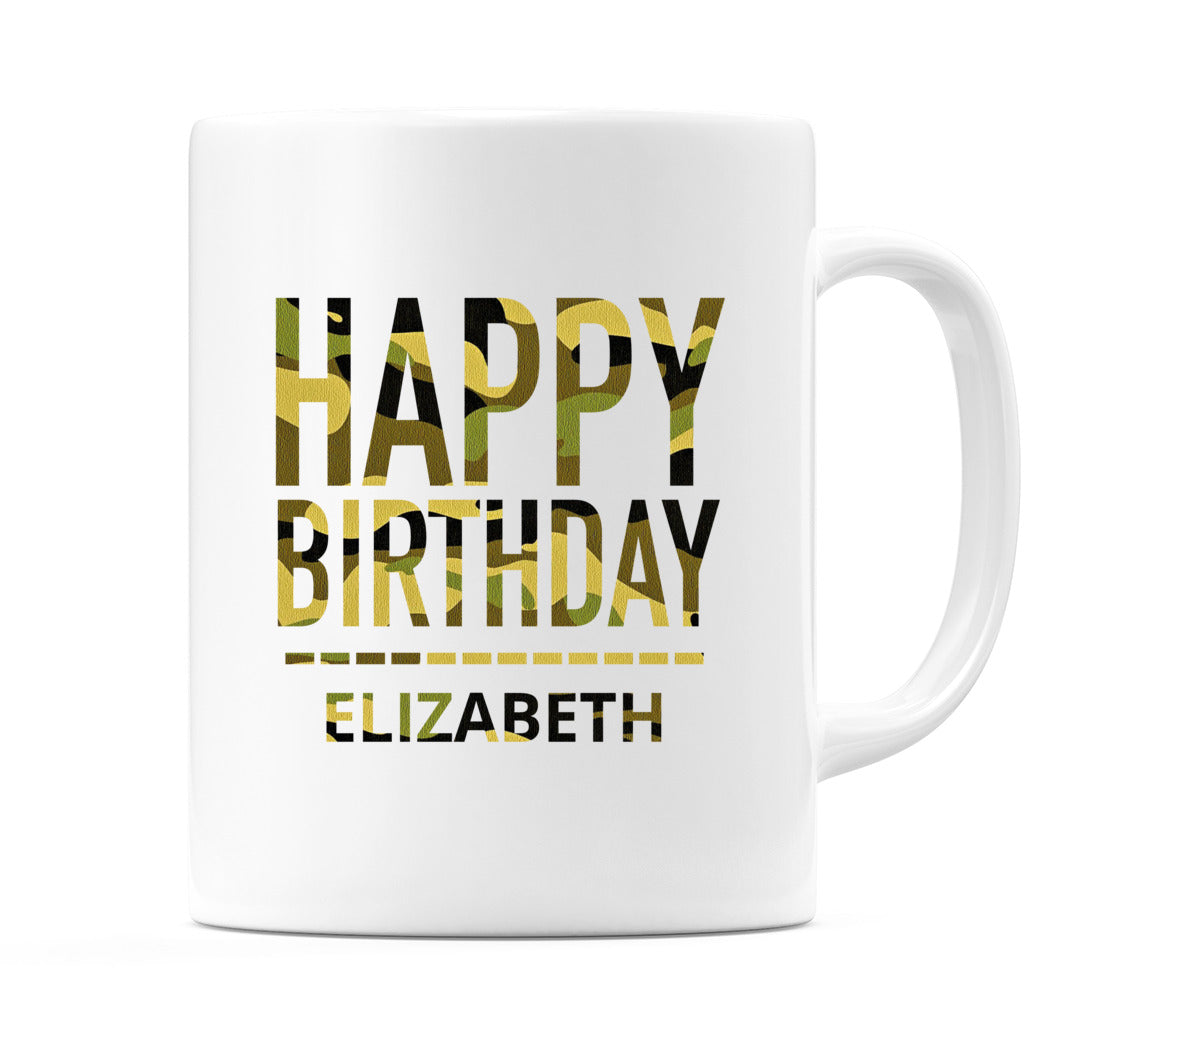 Happy Birthday Elizabeth (Camo) Mug Cup by WeDoMugs